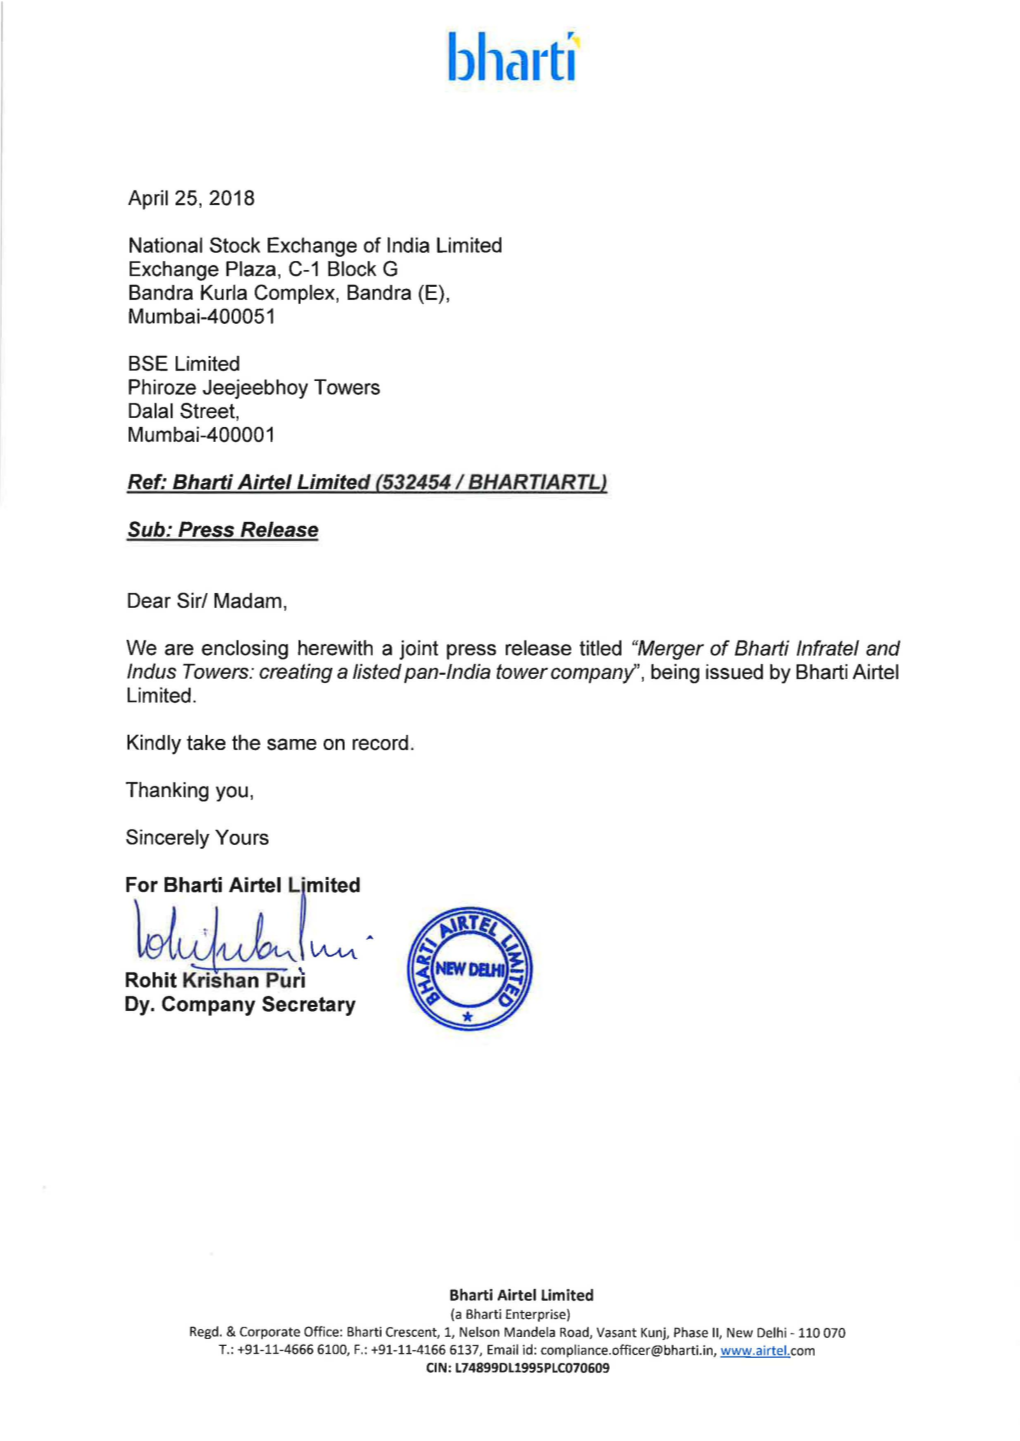 Ref: Bharfi Airfel Limited (532454 / BHARTIARTL) Sub: Press Release